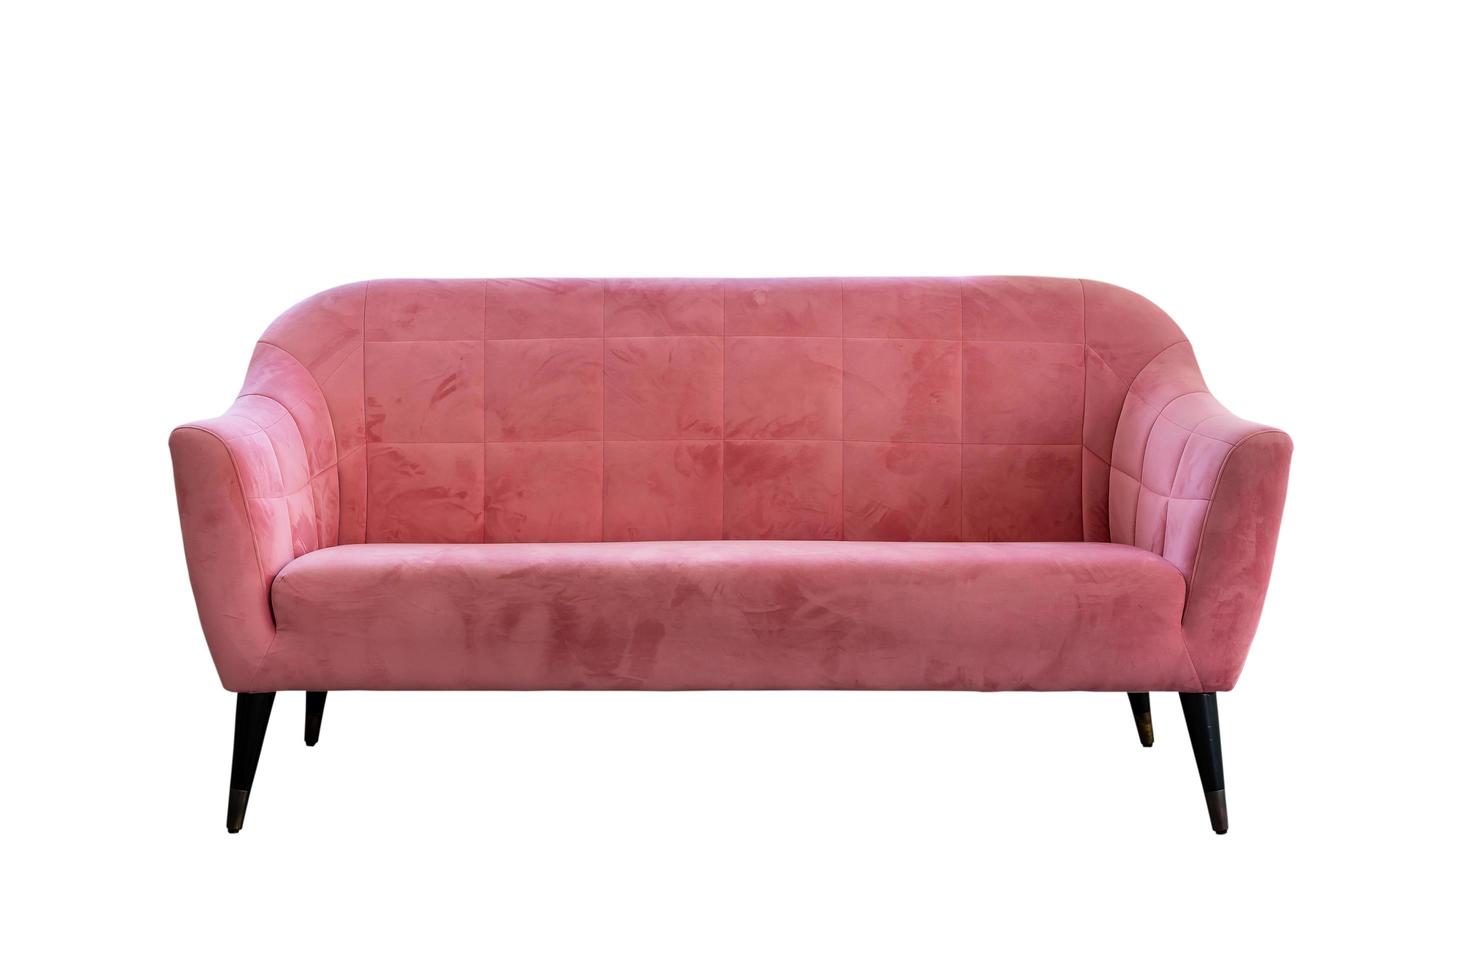 sofá rosa de estilo moderno aislado en fondo blanco, sillón club con reposabrazos. muebles de interior conjunto de sofás de la sala de estar foto